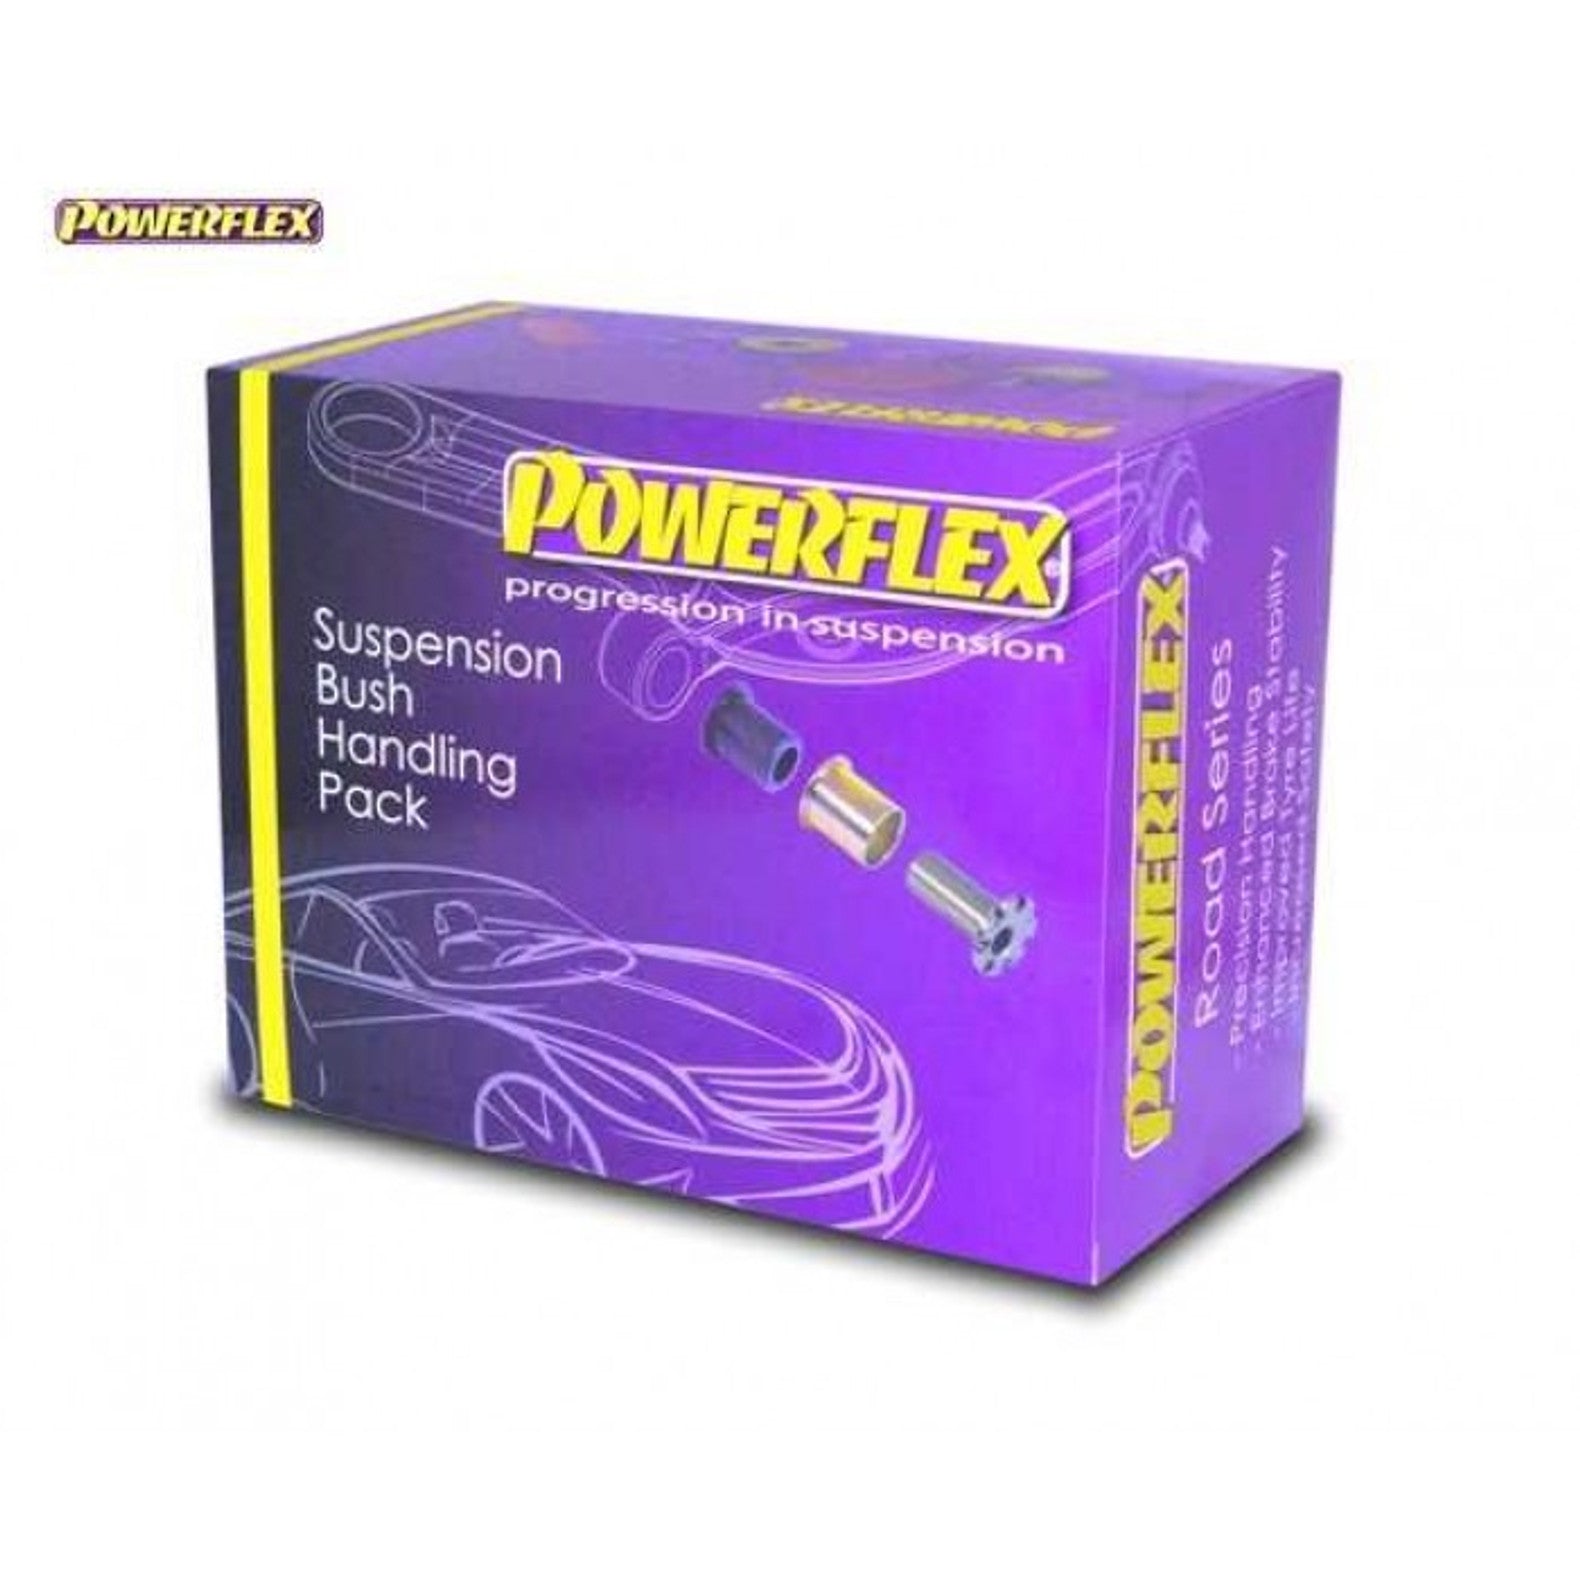 Powerflex Handling ignite performance